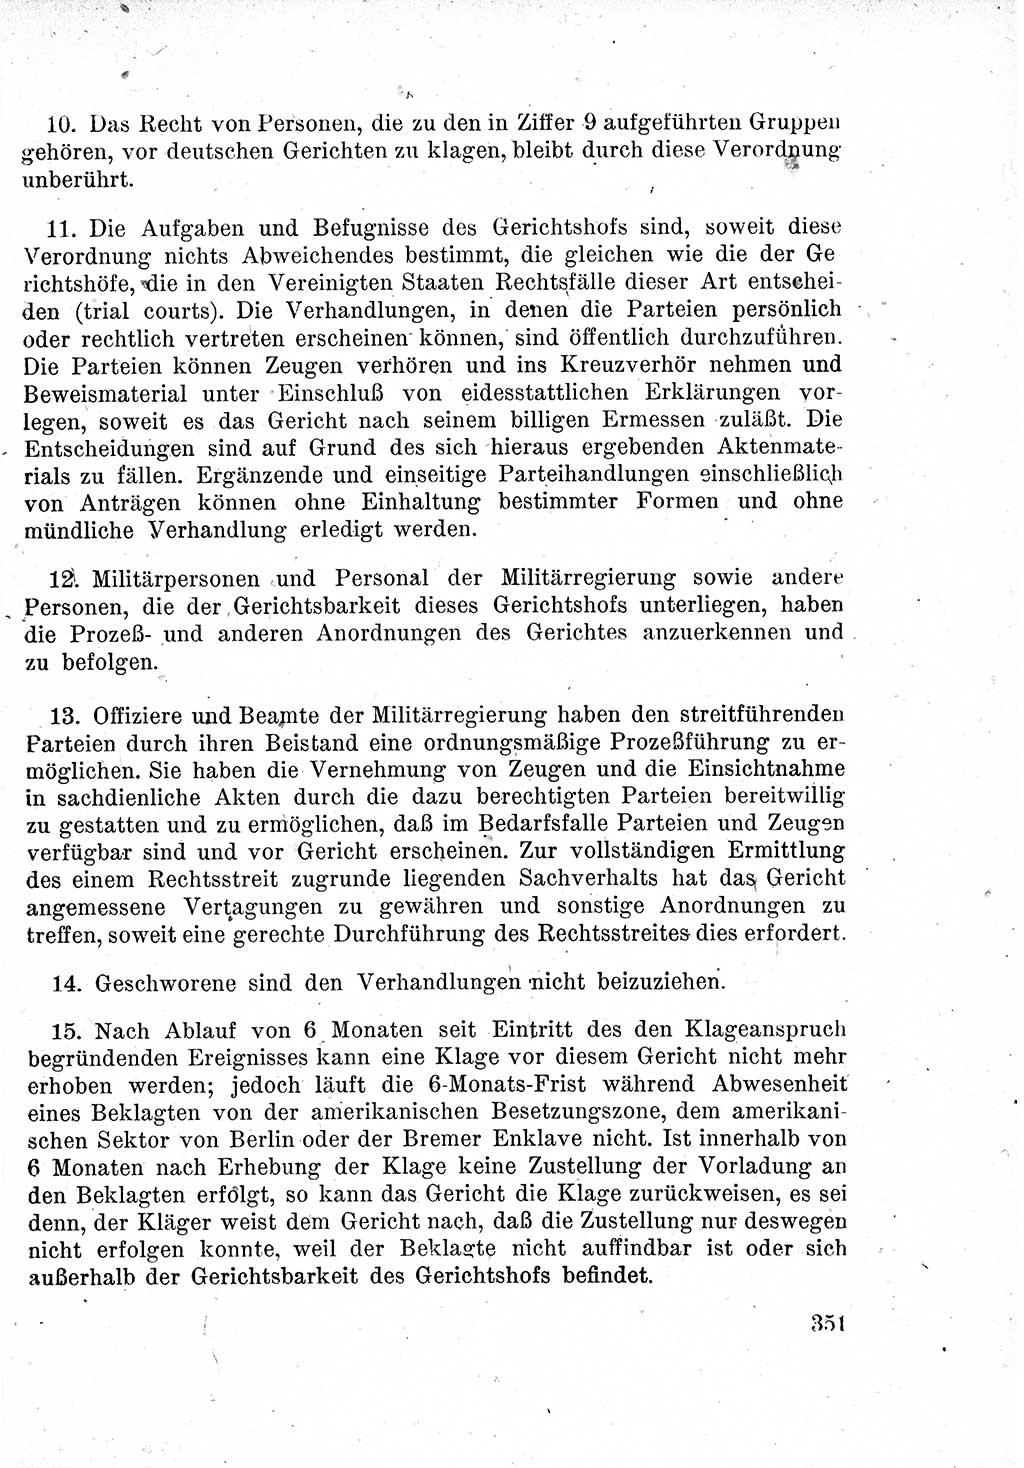 Das Recht der Besatzungsmacht (Deutschland), Proklamationen, Deklerationen, Verordnungen, Gesetze und Bekanntmachungen 1947, Seite 351 (R. Bes. Dtl. 1947, S. 351)